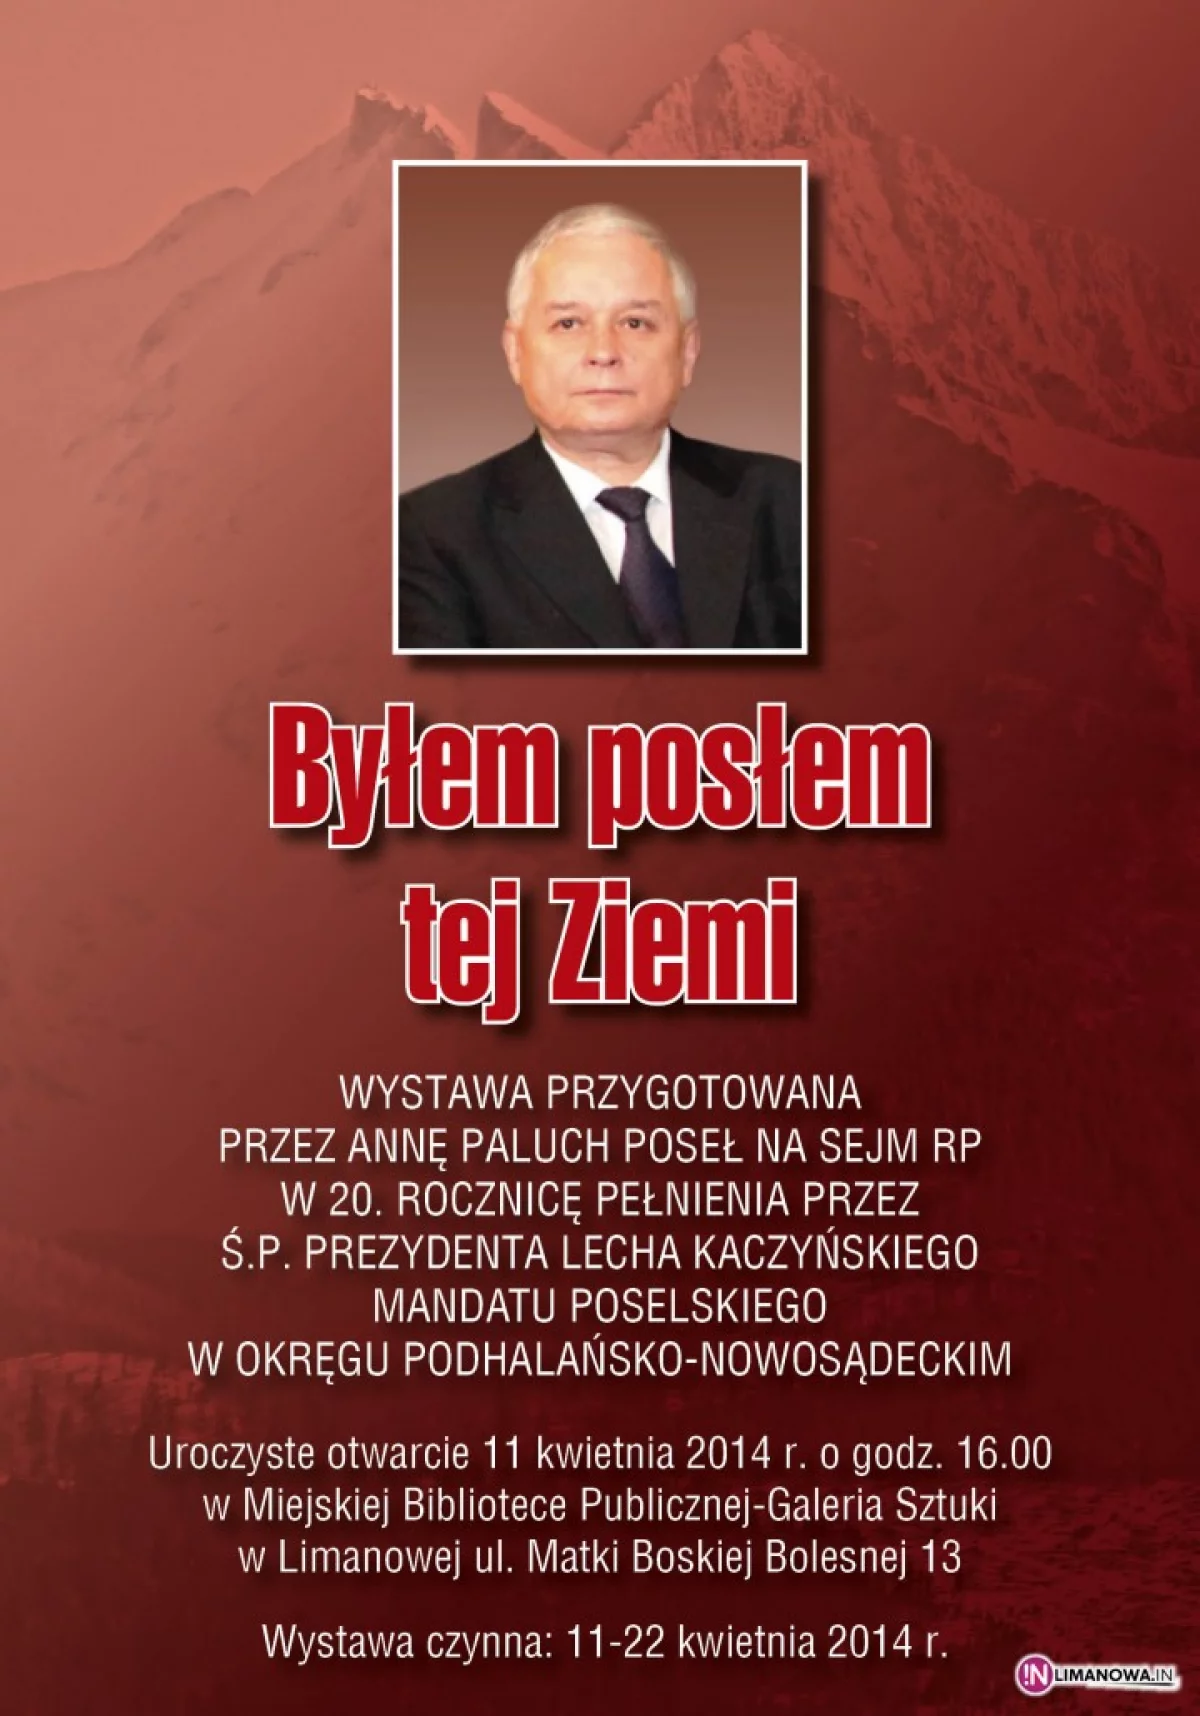 Lech Kaczyński – był posłem tej ziemi